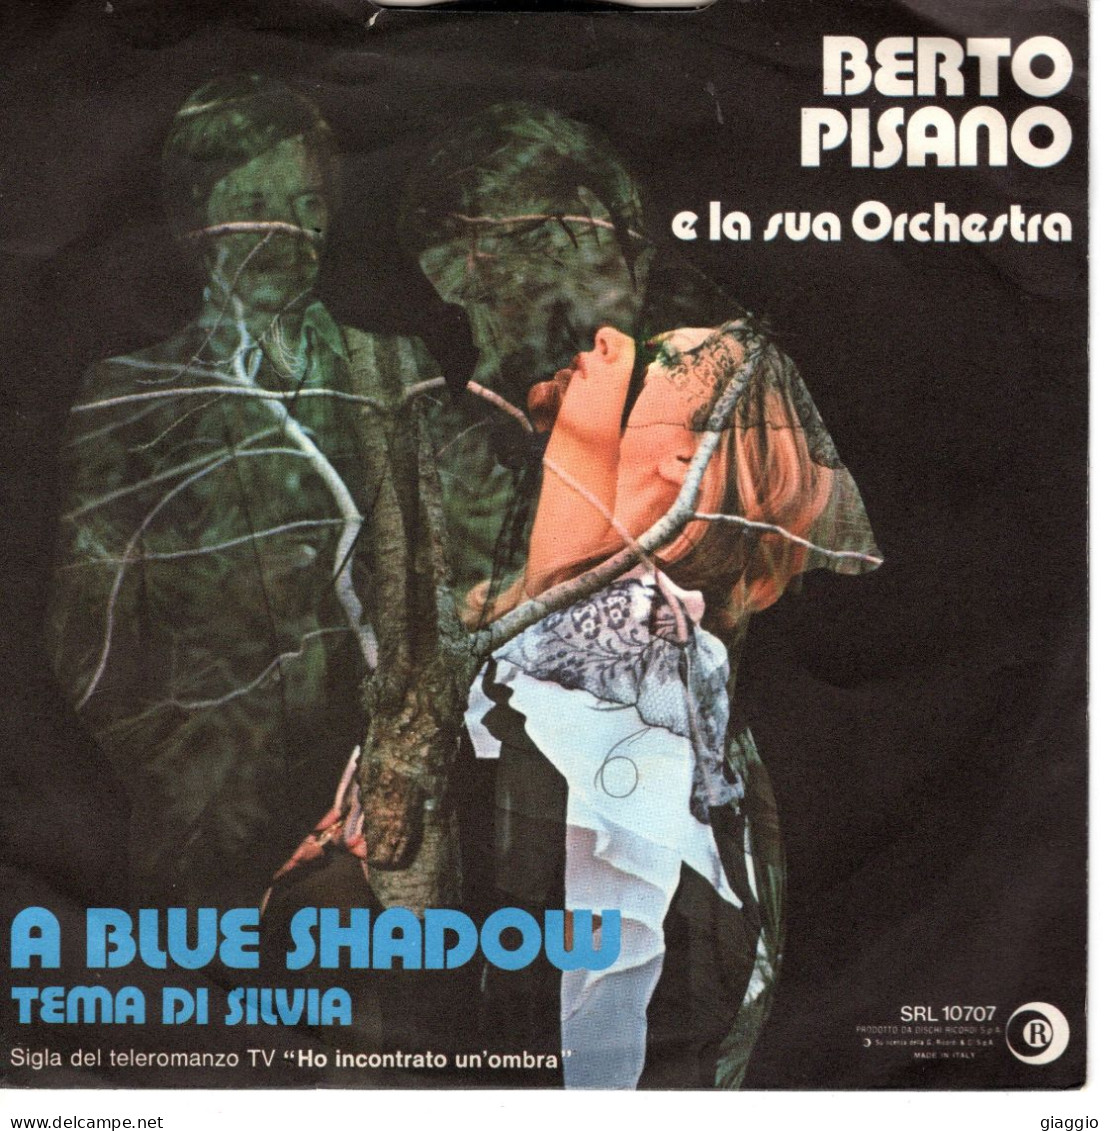 °°° 615) 45 GIRI - BERTO PISANO - A BLUE SHADOW / TEMA DI SILVIA °°° - Otros - Canción Italiana